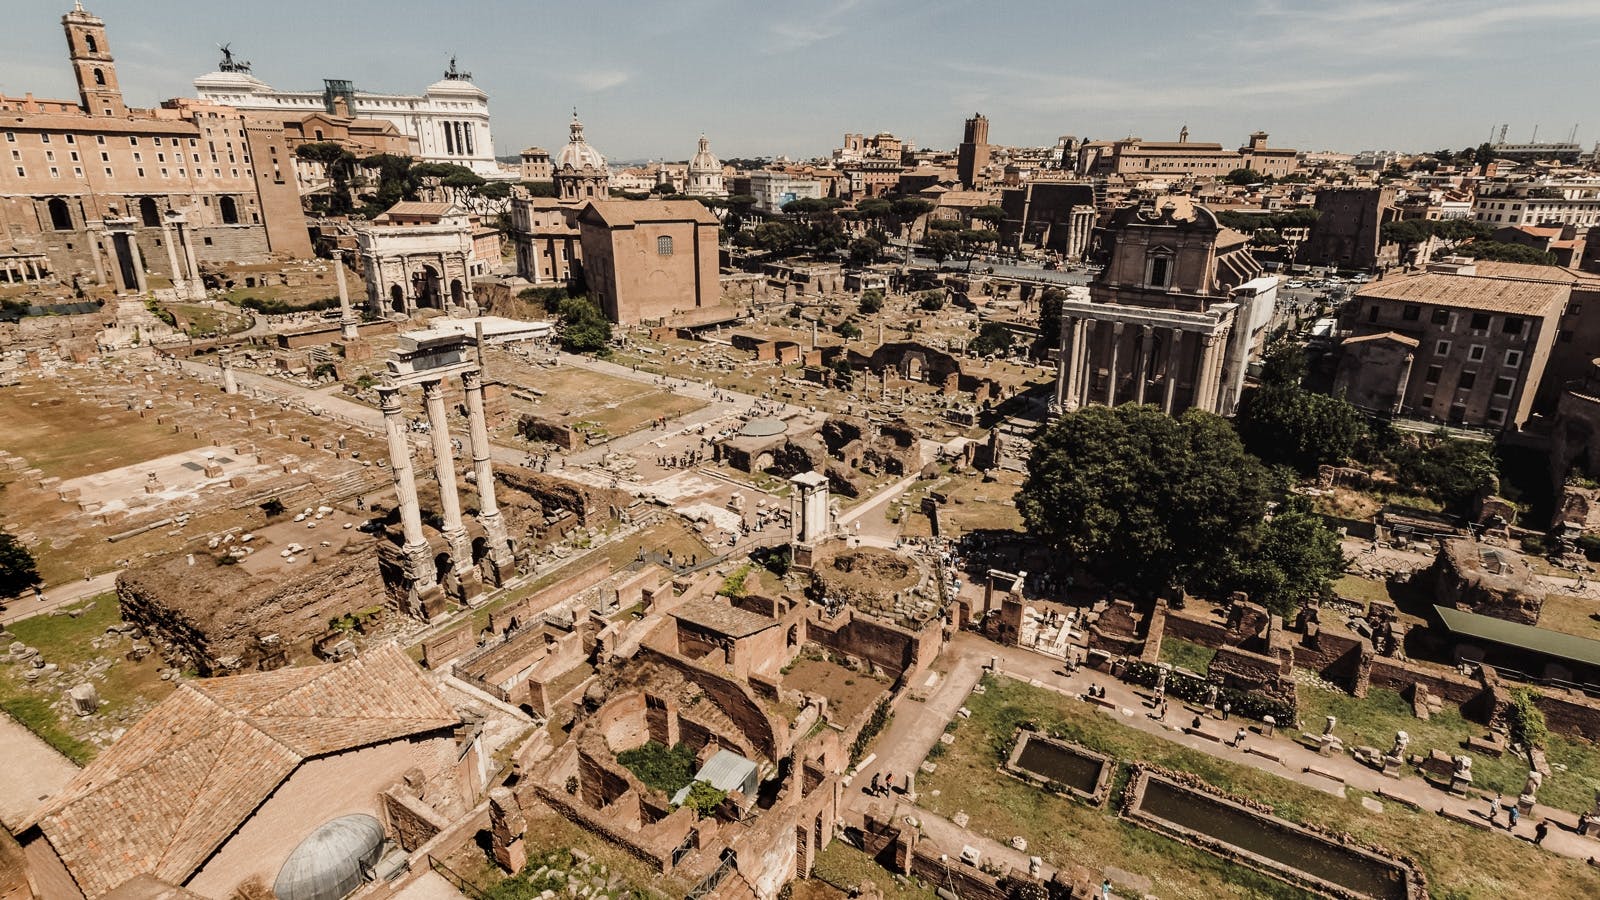 Het beste van Rome, wandeltocht en snelle toegang tot het Forum Romanum